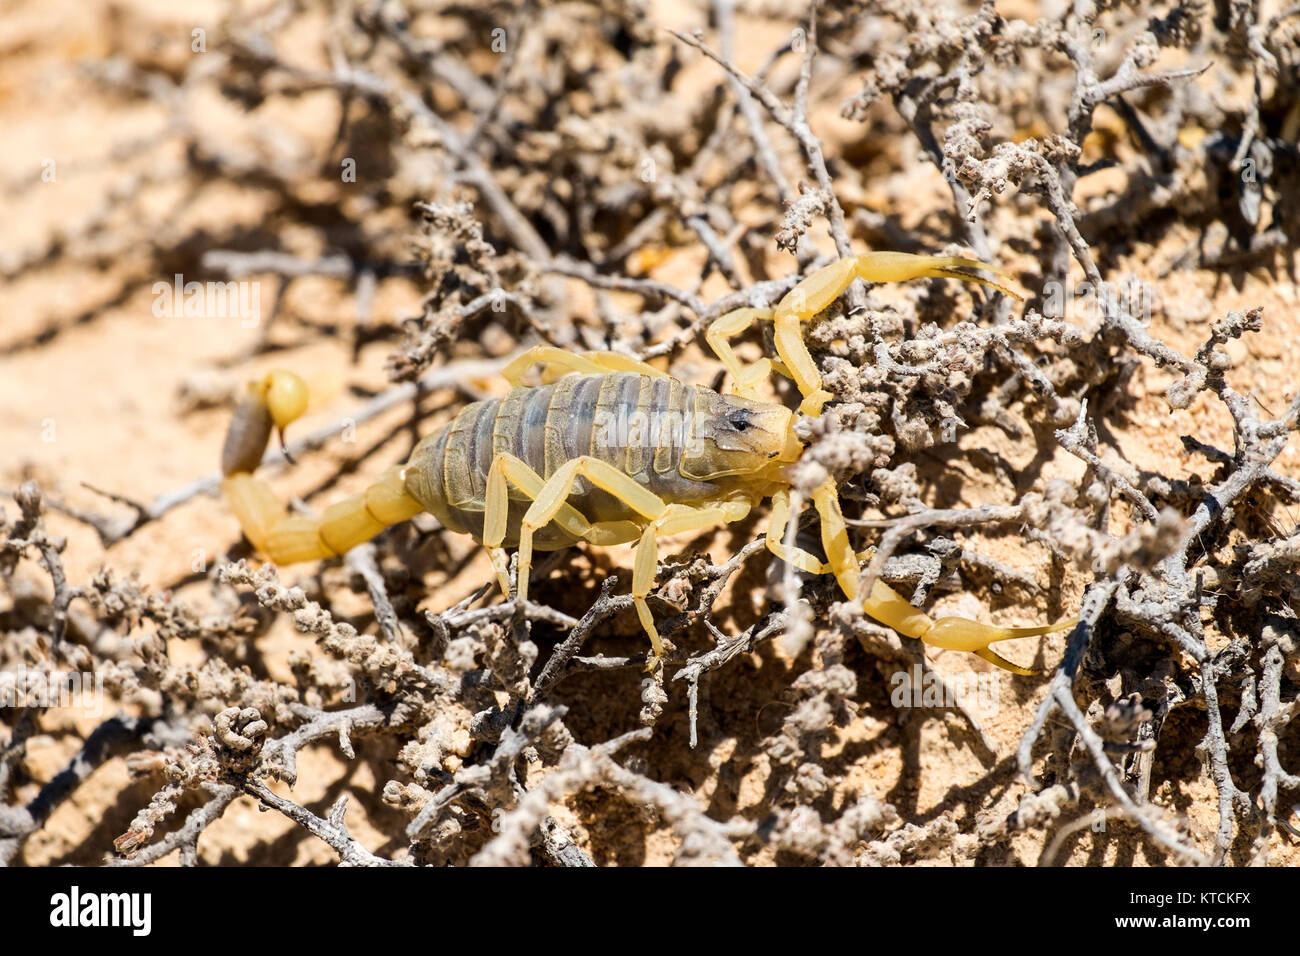 Scorpion deathstalker from the Negev desert took refuge (Leiurus quinquestriatus) Stock Photo